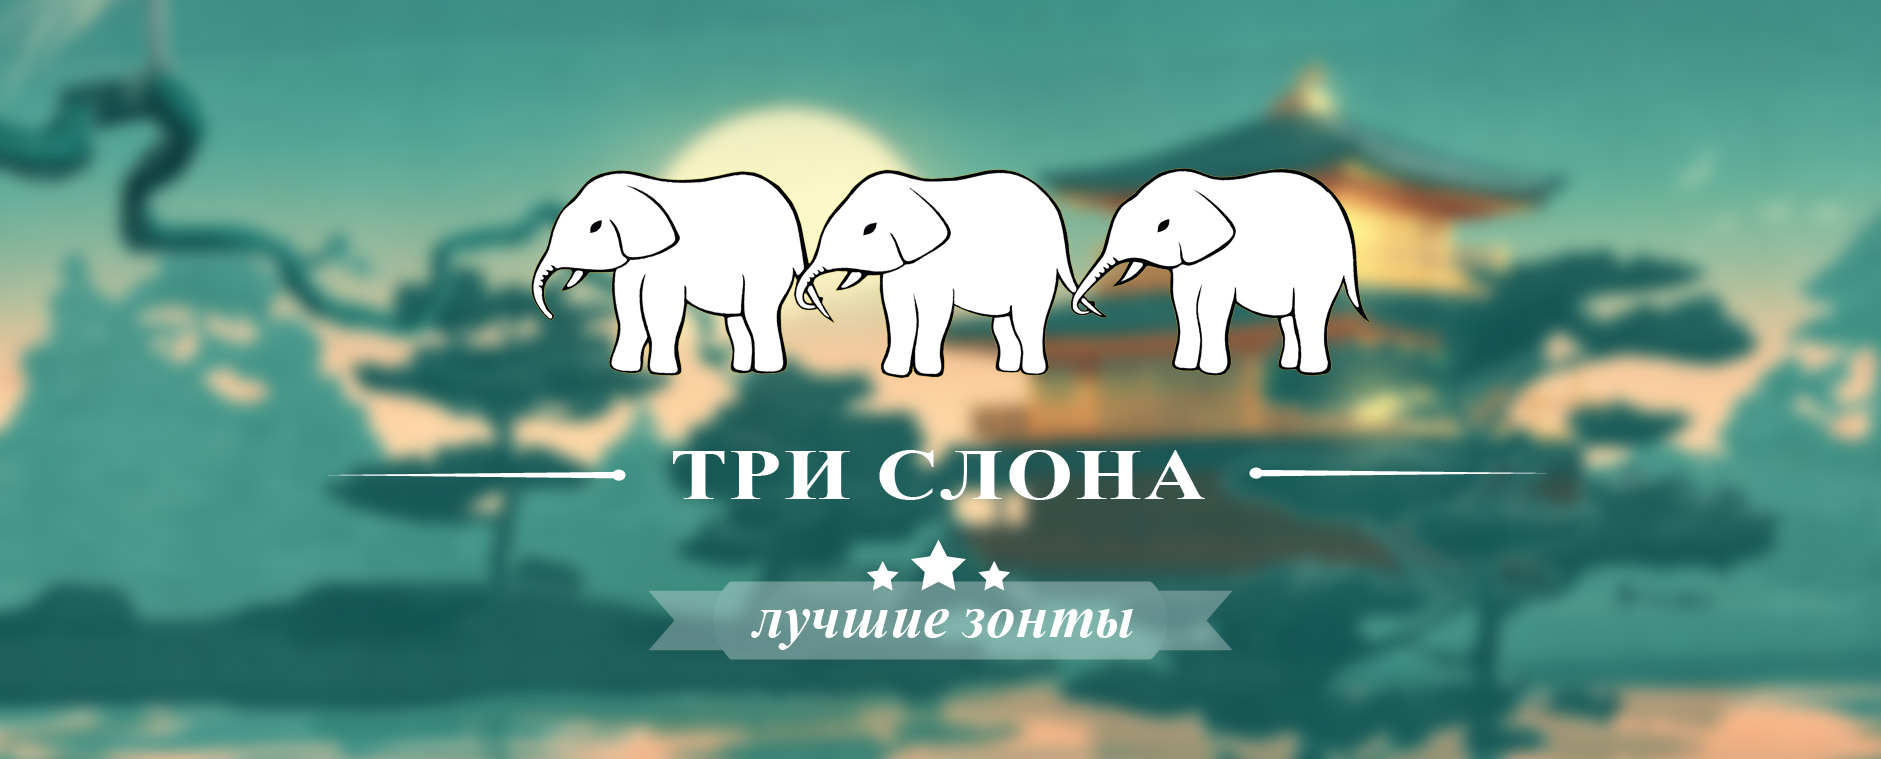 Три Слона фото магазин zonti-tri-slona.ru